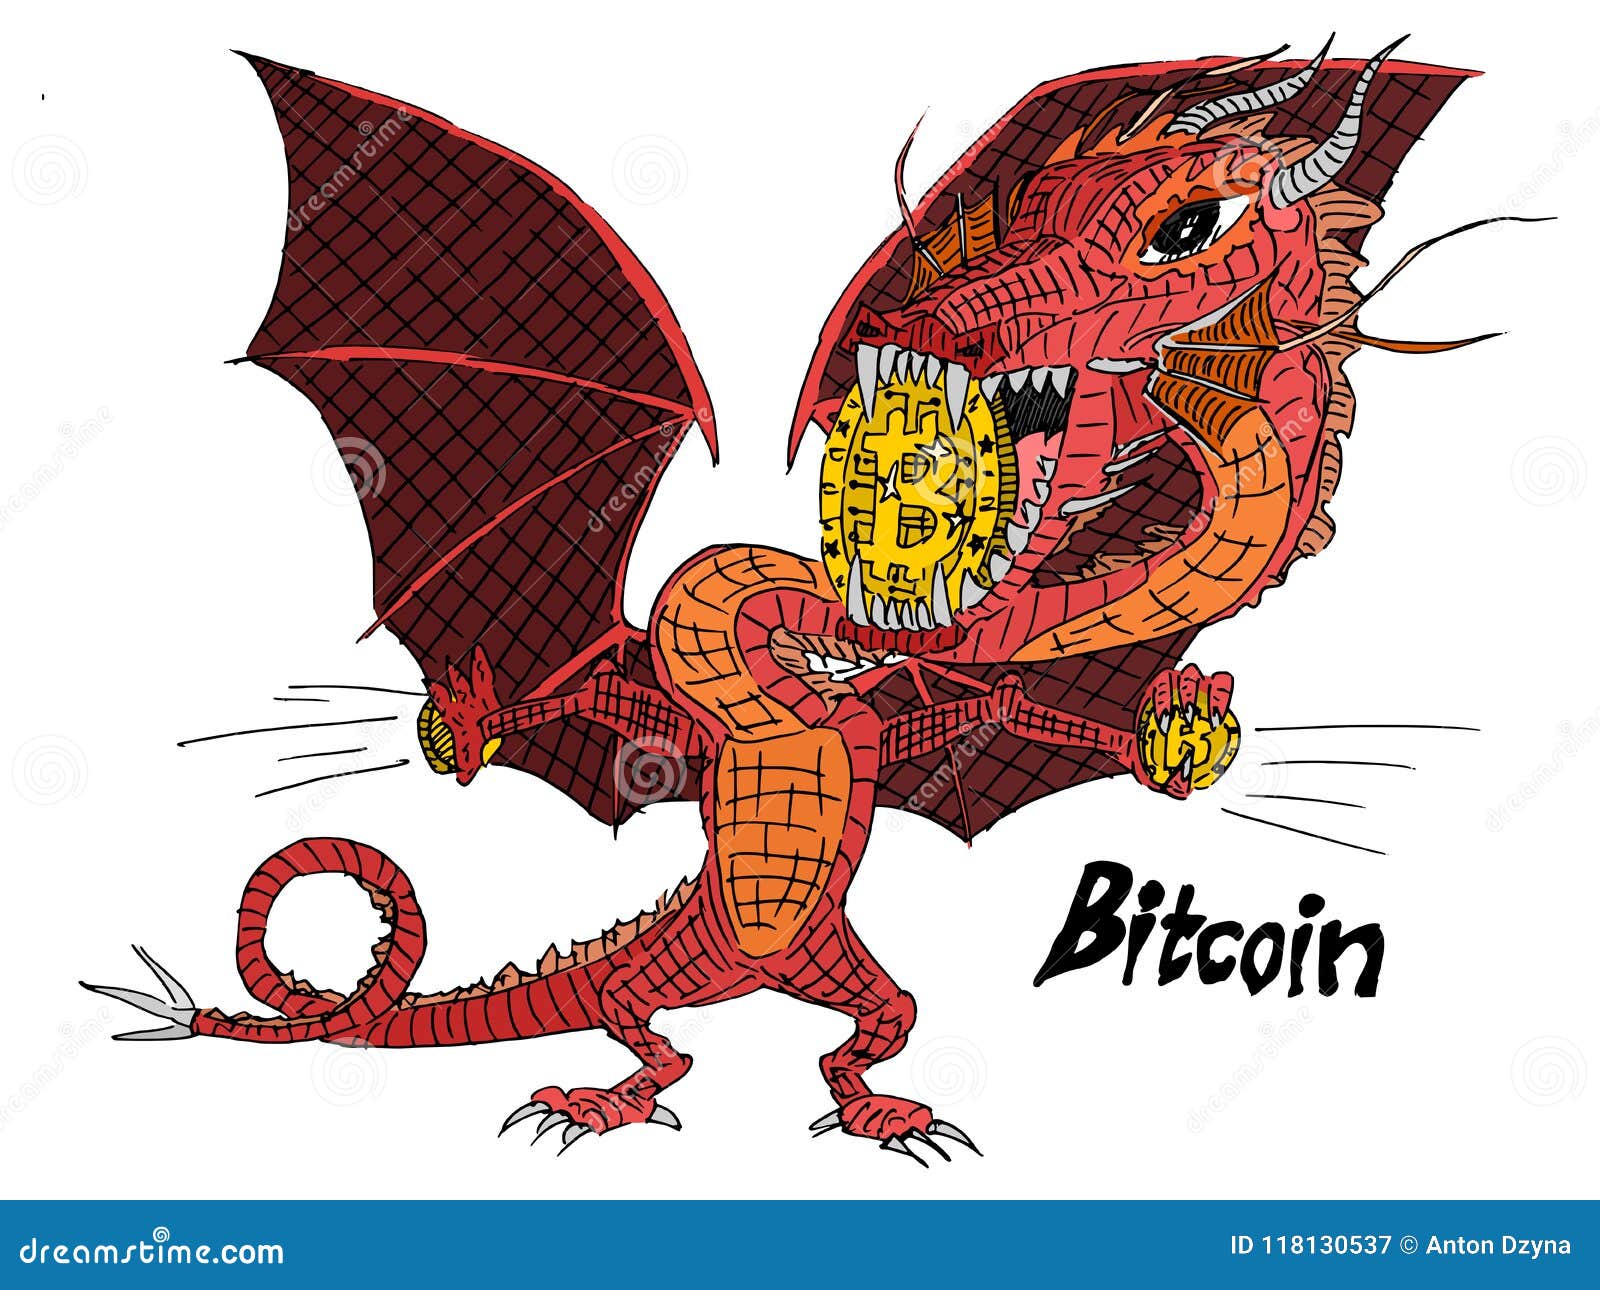 bitcoin dragon